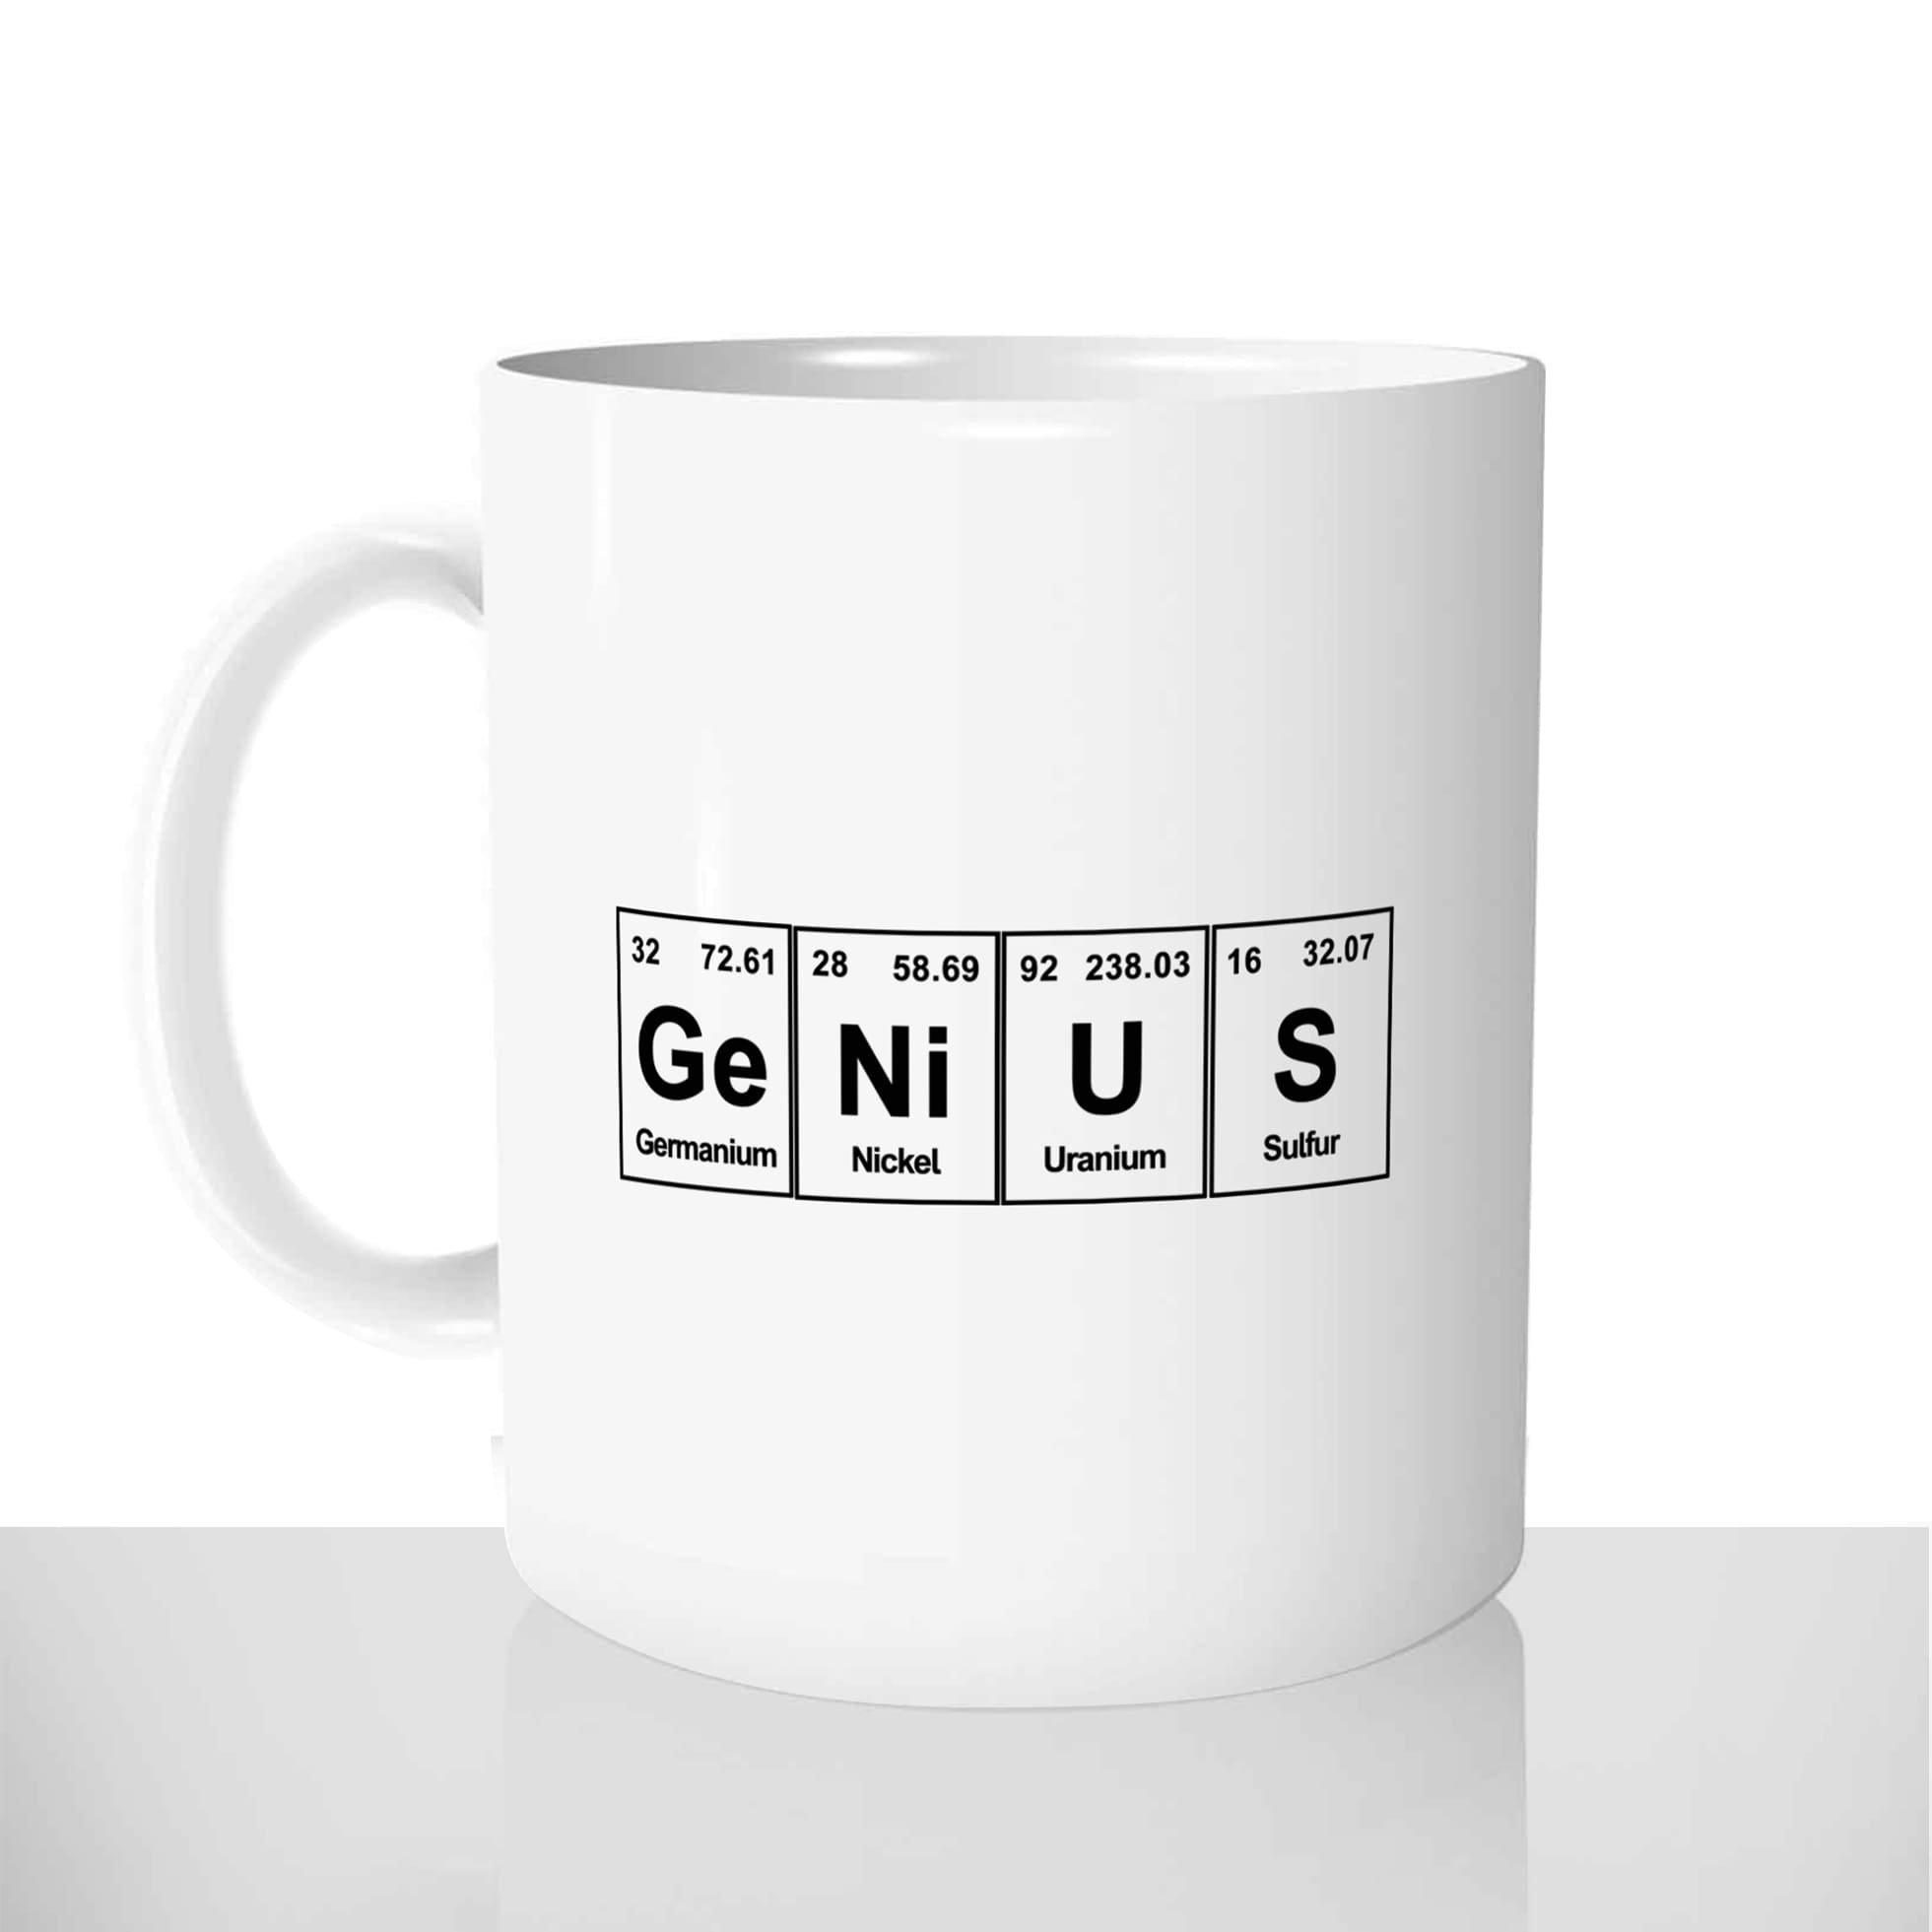 mug classique en céramique 11oz personnalisé personnalisation photo geek genie genius element scientifique personnalisable offrir cadeau